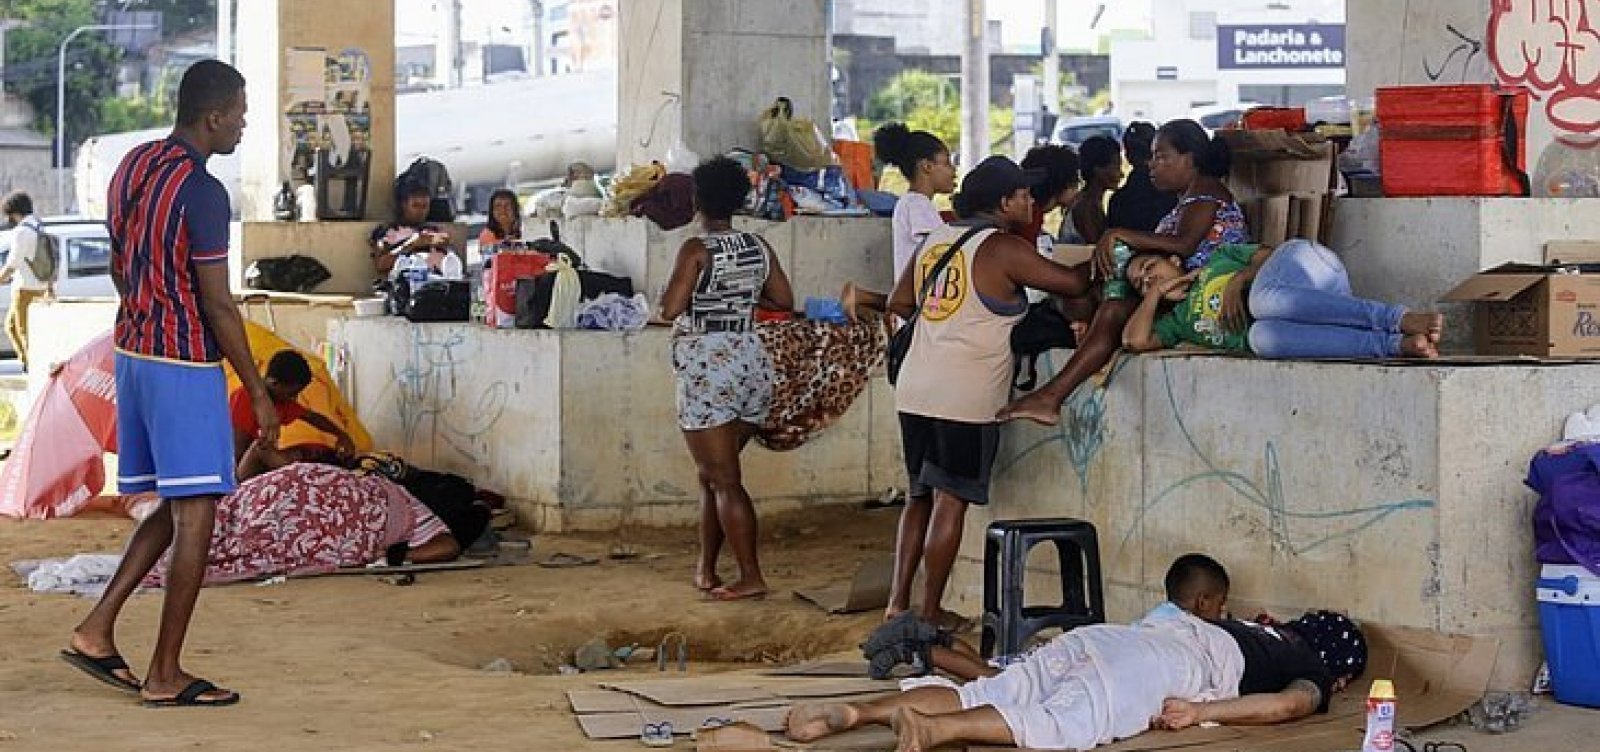 Problemas com cadastro de ambulantes para festas em Salvador são antigos, diz associação